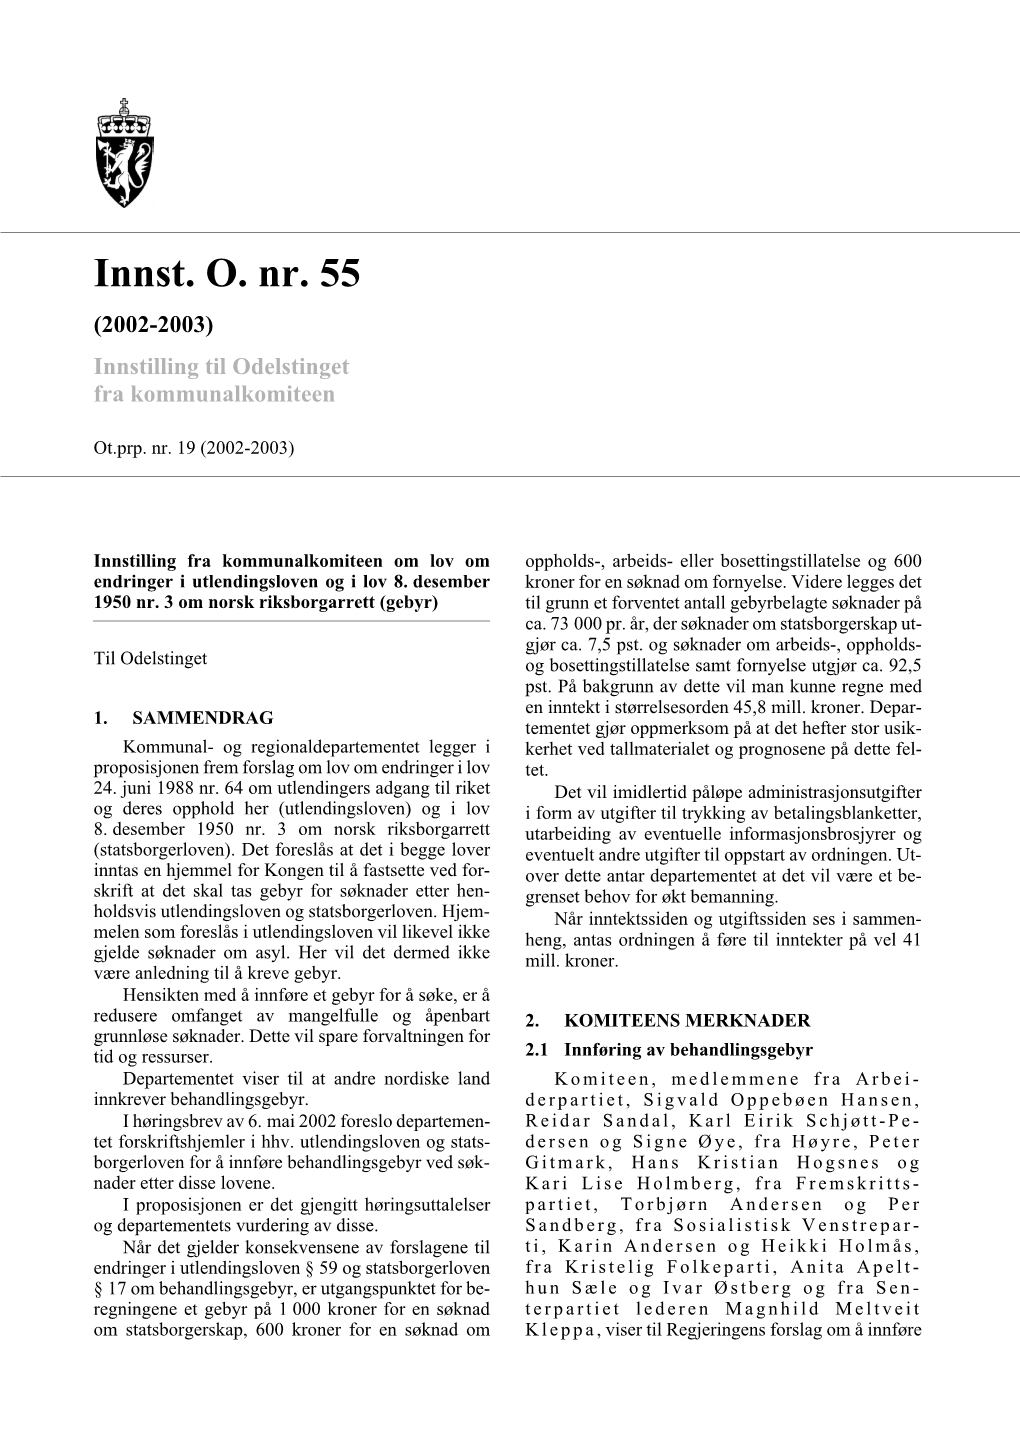 Innst. O. Nr. 55 (2002-2003) Innstilling Til Odelstinget Fra Kommunalkomiteen